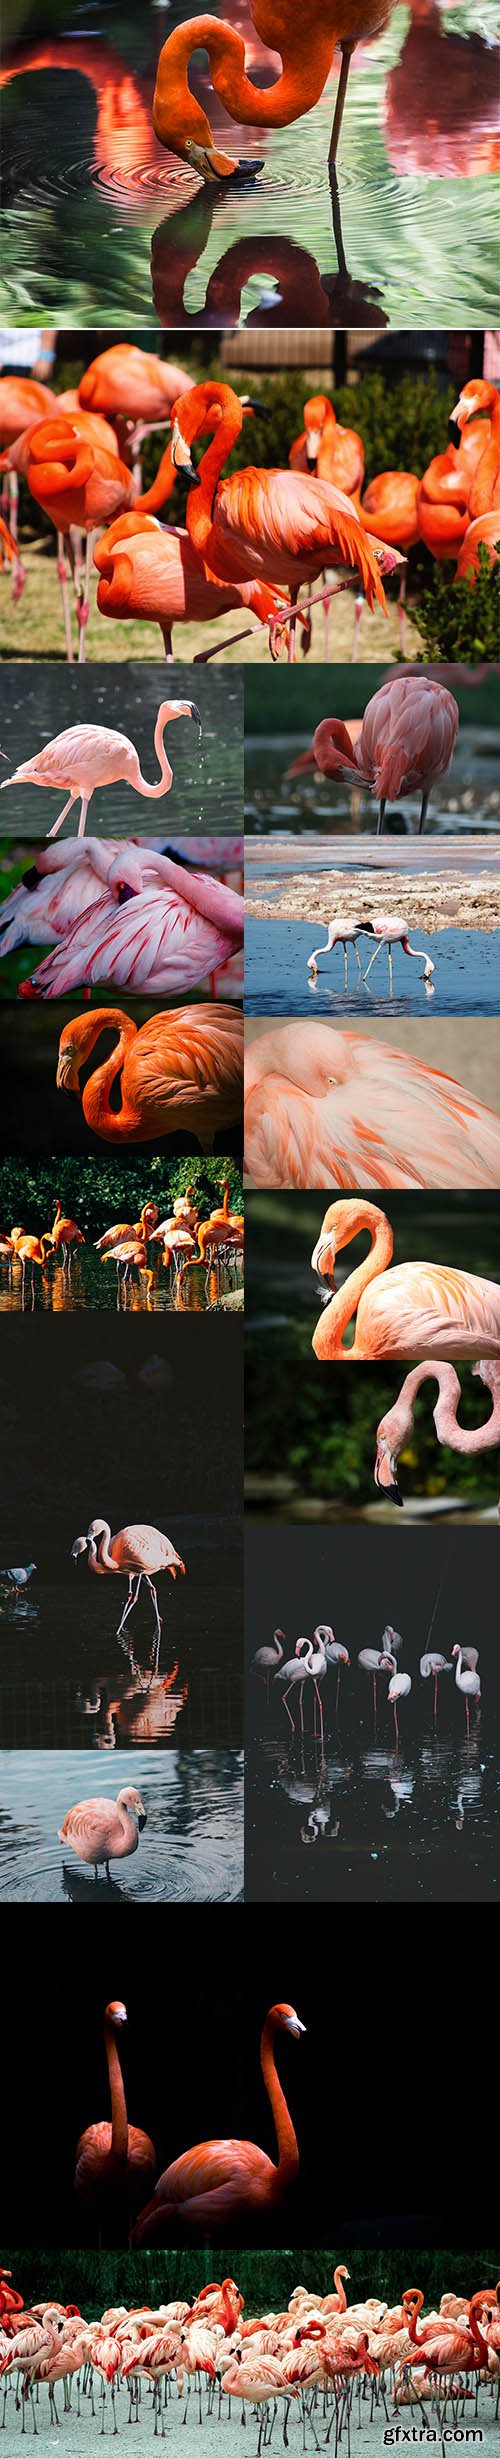 Flamingo Bundle - Premium UHQ Stock Photo Vol 2